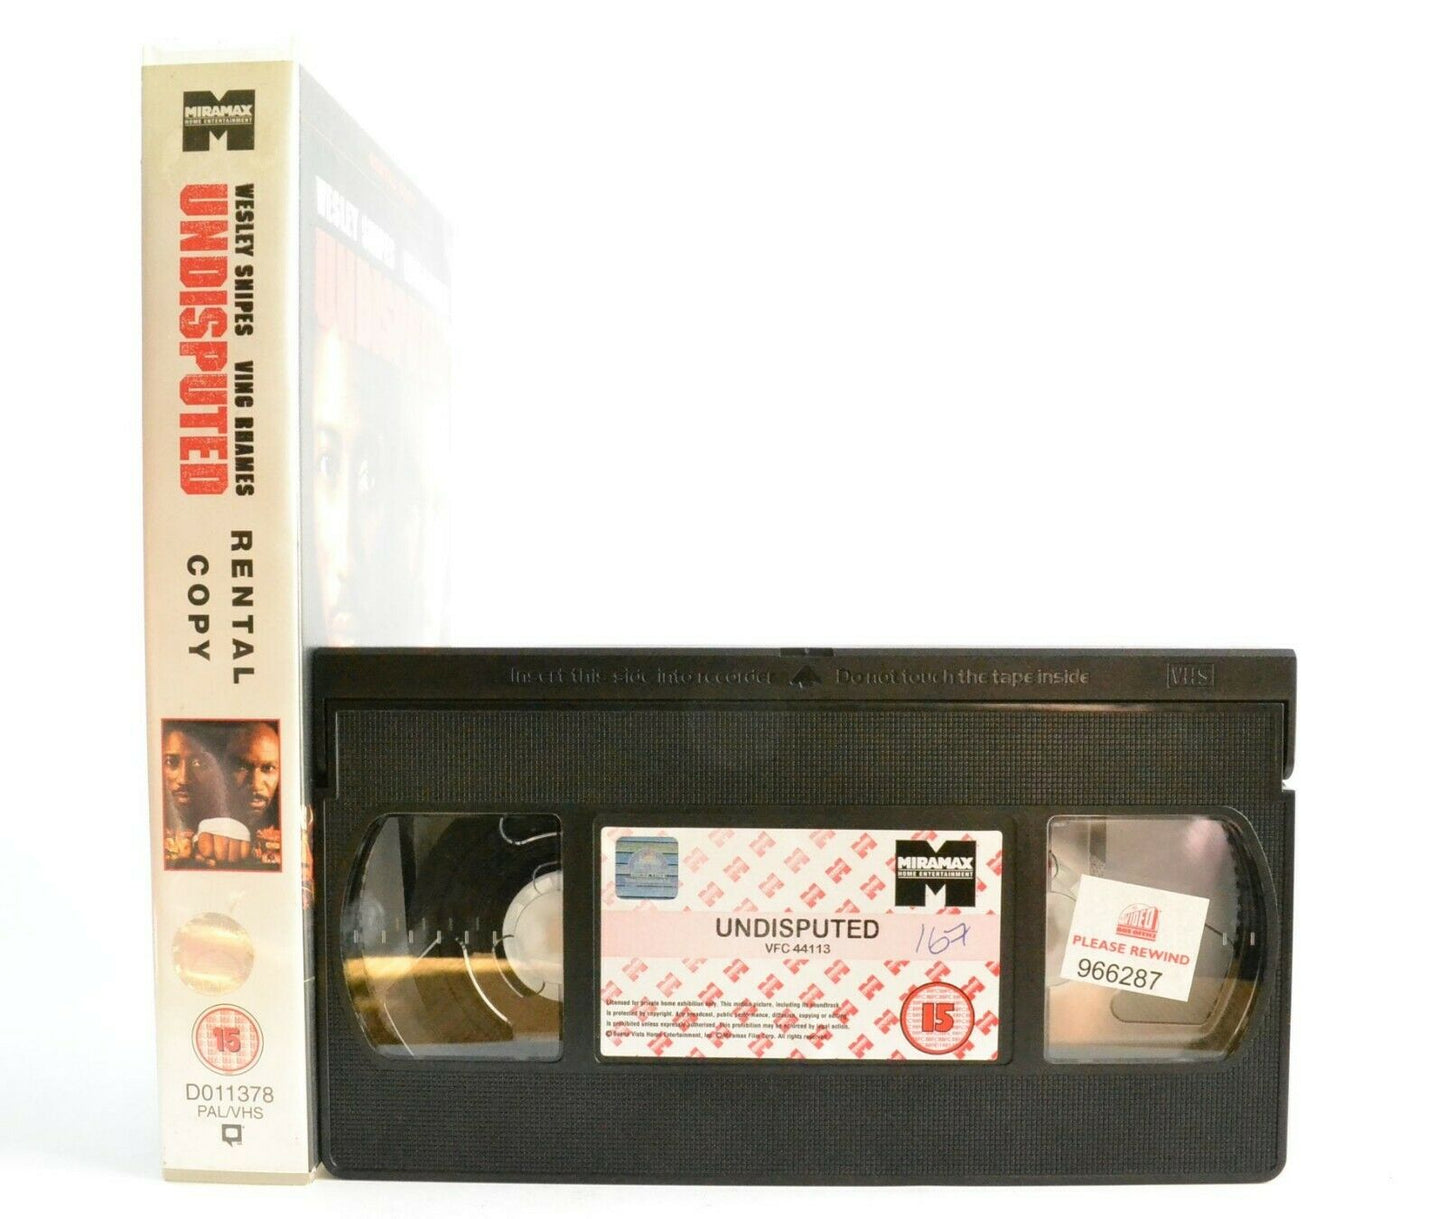 Undisputed: Wesley Snipes/Ving Rhames - Thriller - Large Box - Ex-Rental - VHS-